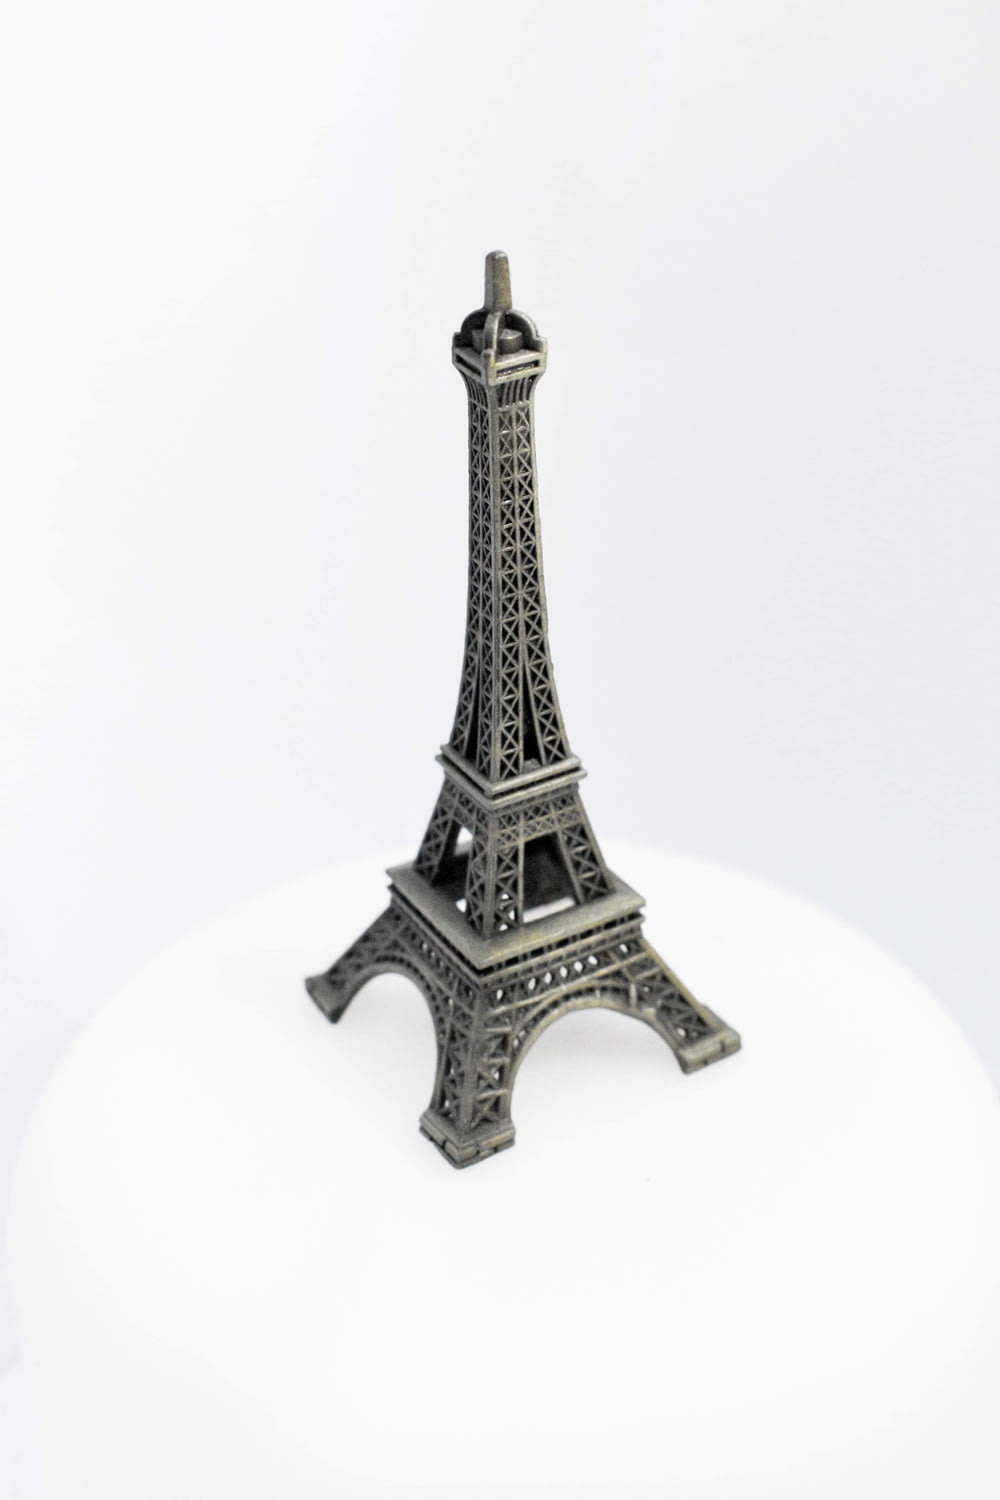 Eiffel Tower scale model